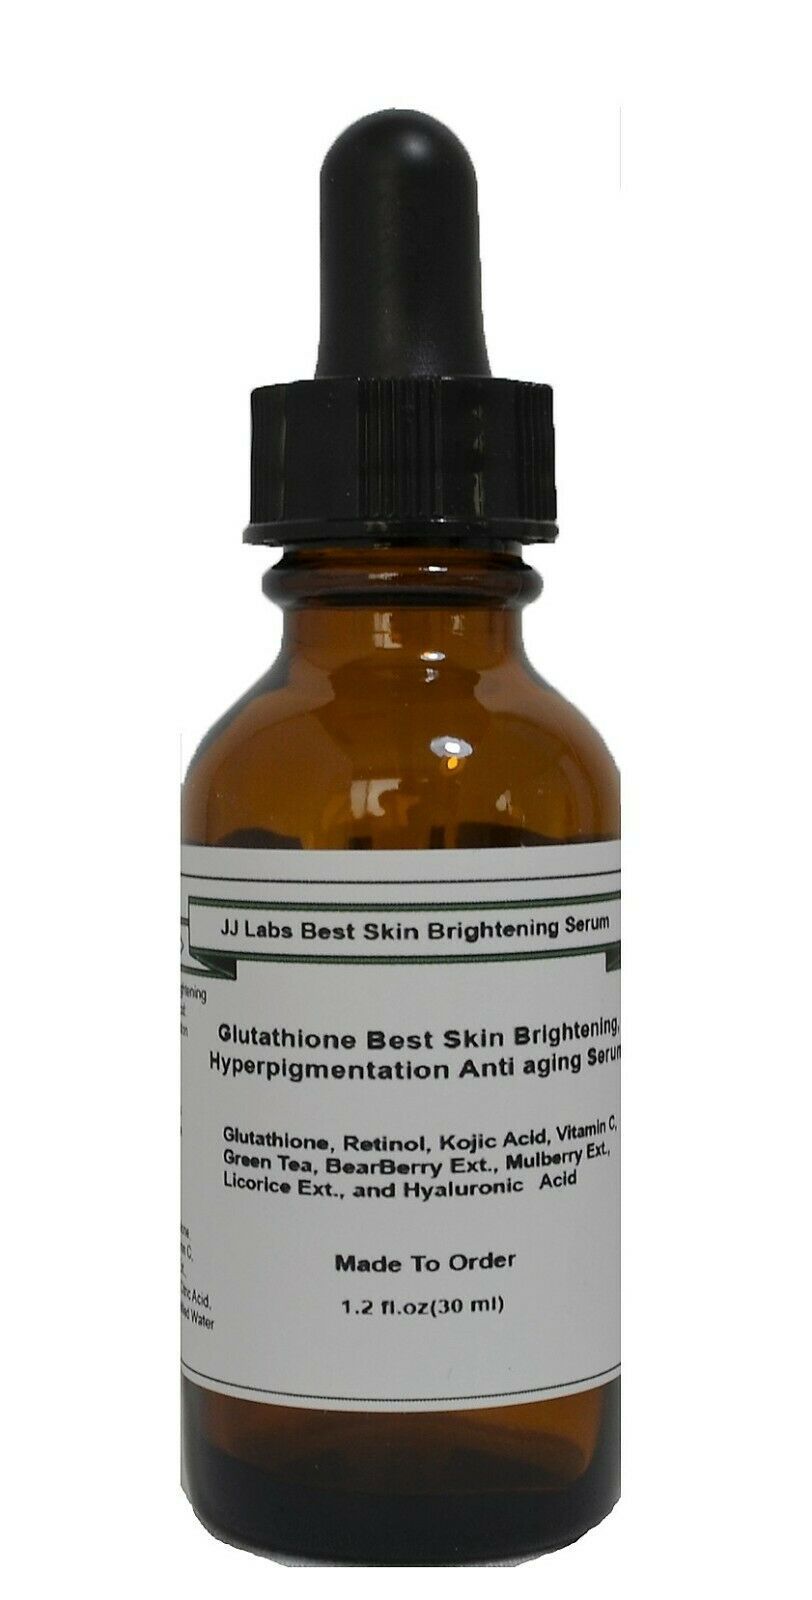 Glutathione Best Skin Brightening, Hyperpigmentation Anti Aging Serum - $19.31 - $29.21